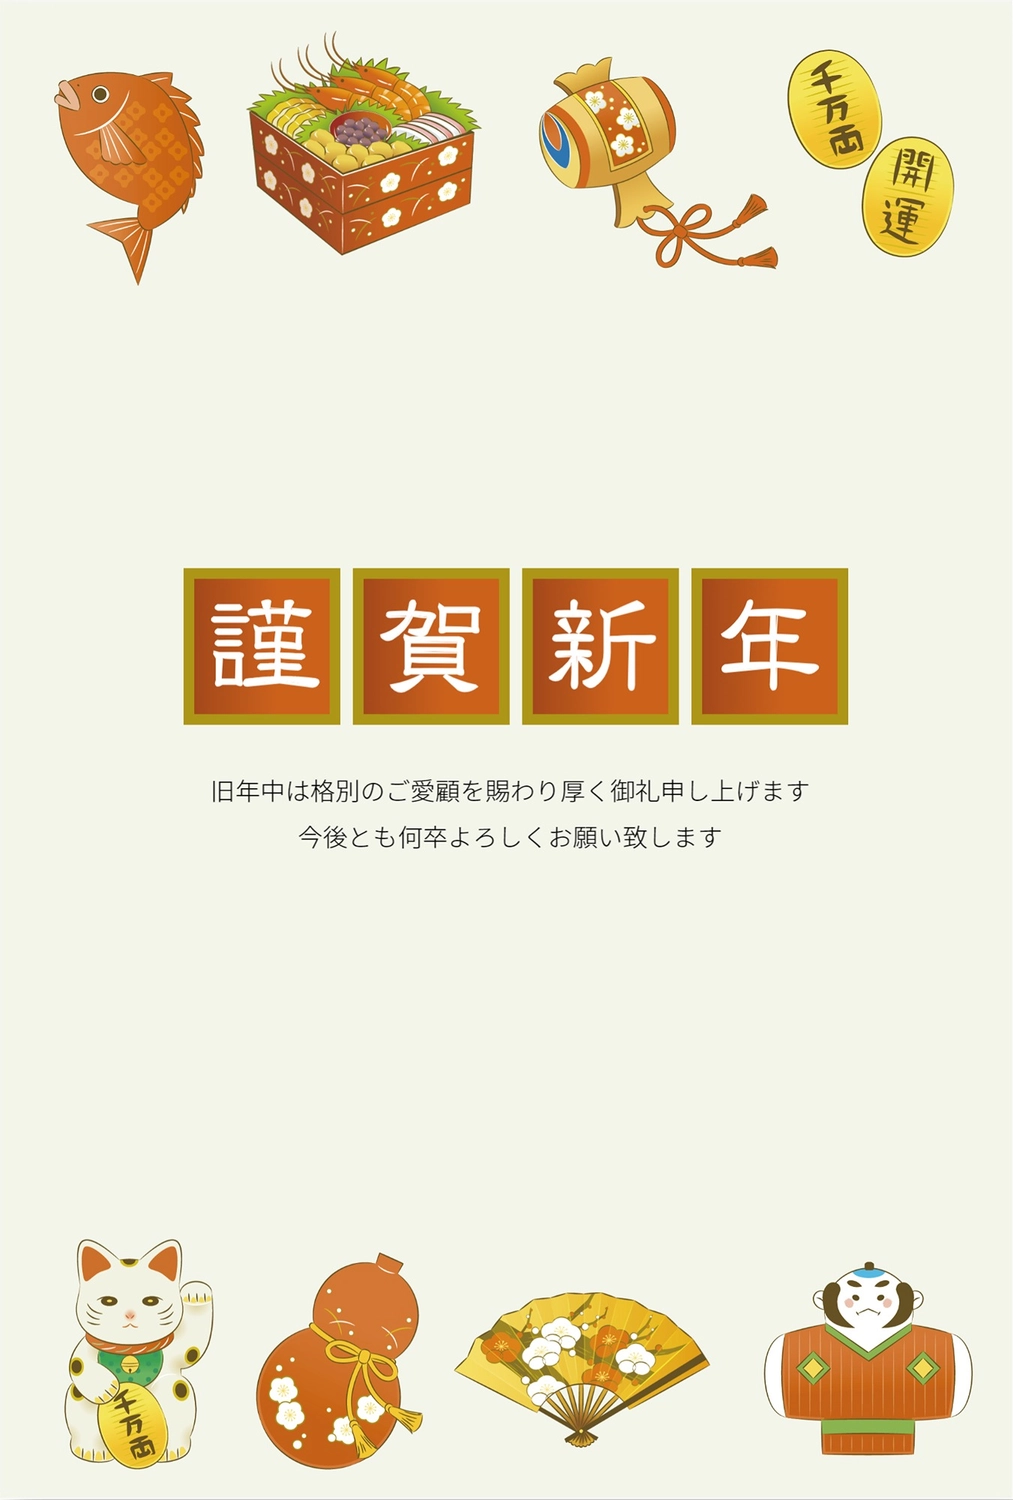 和風イラスト年賀状　縦, margin, food served during the New Year's Holidays, multi-tiered food box, New Year Card template